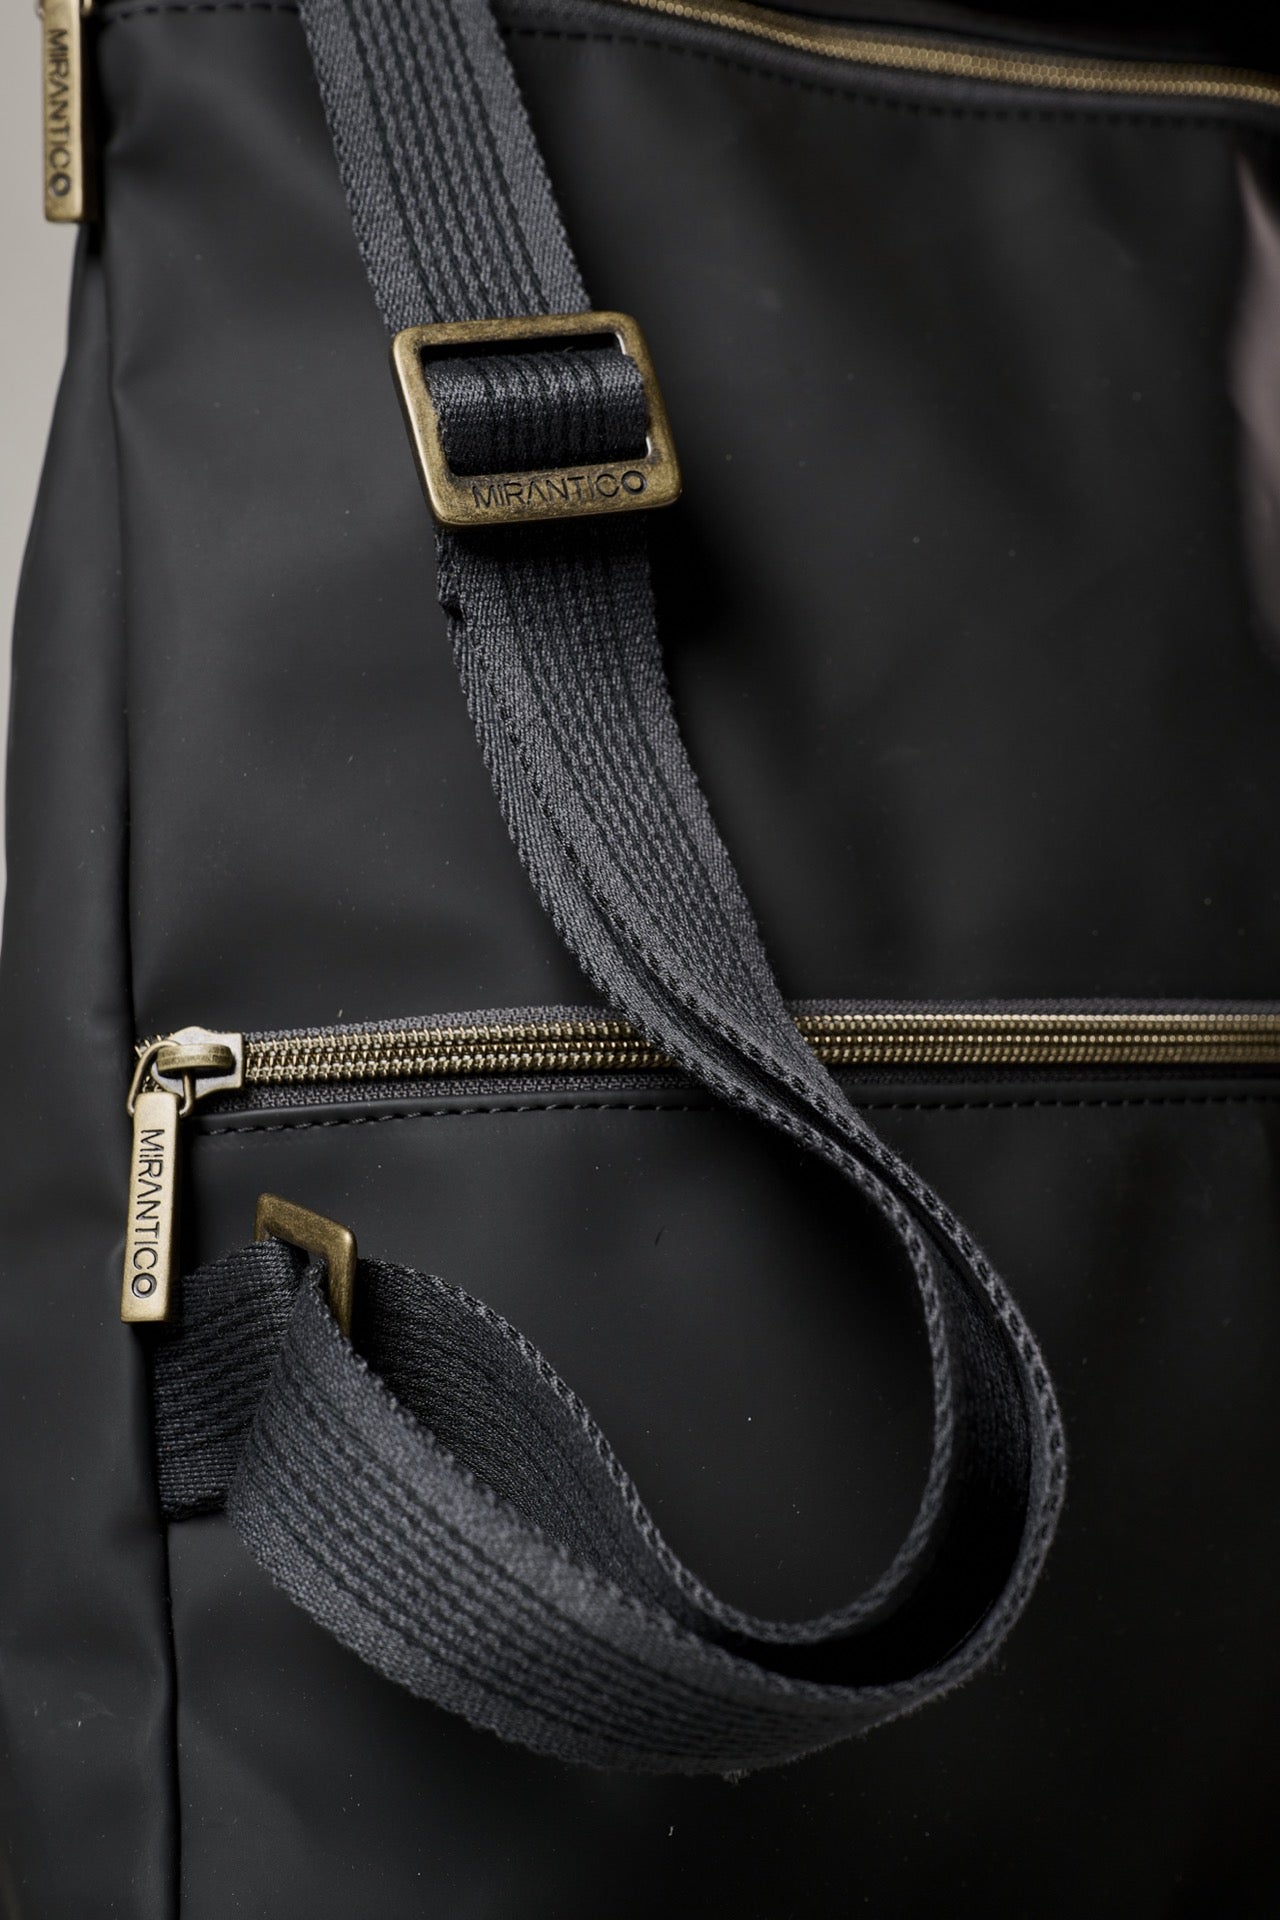 V2 x Mirantico - Black Memo Bag Backpack with Pocket in Bricks fabric